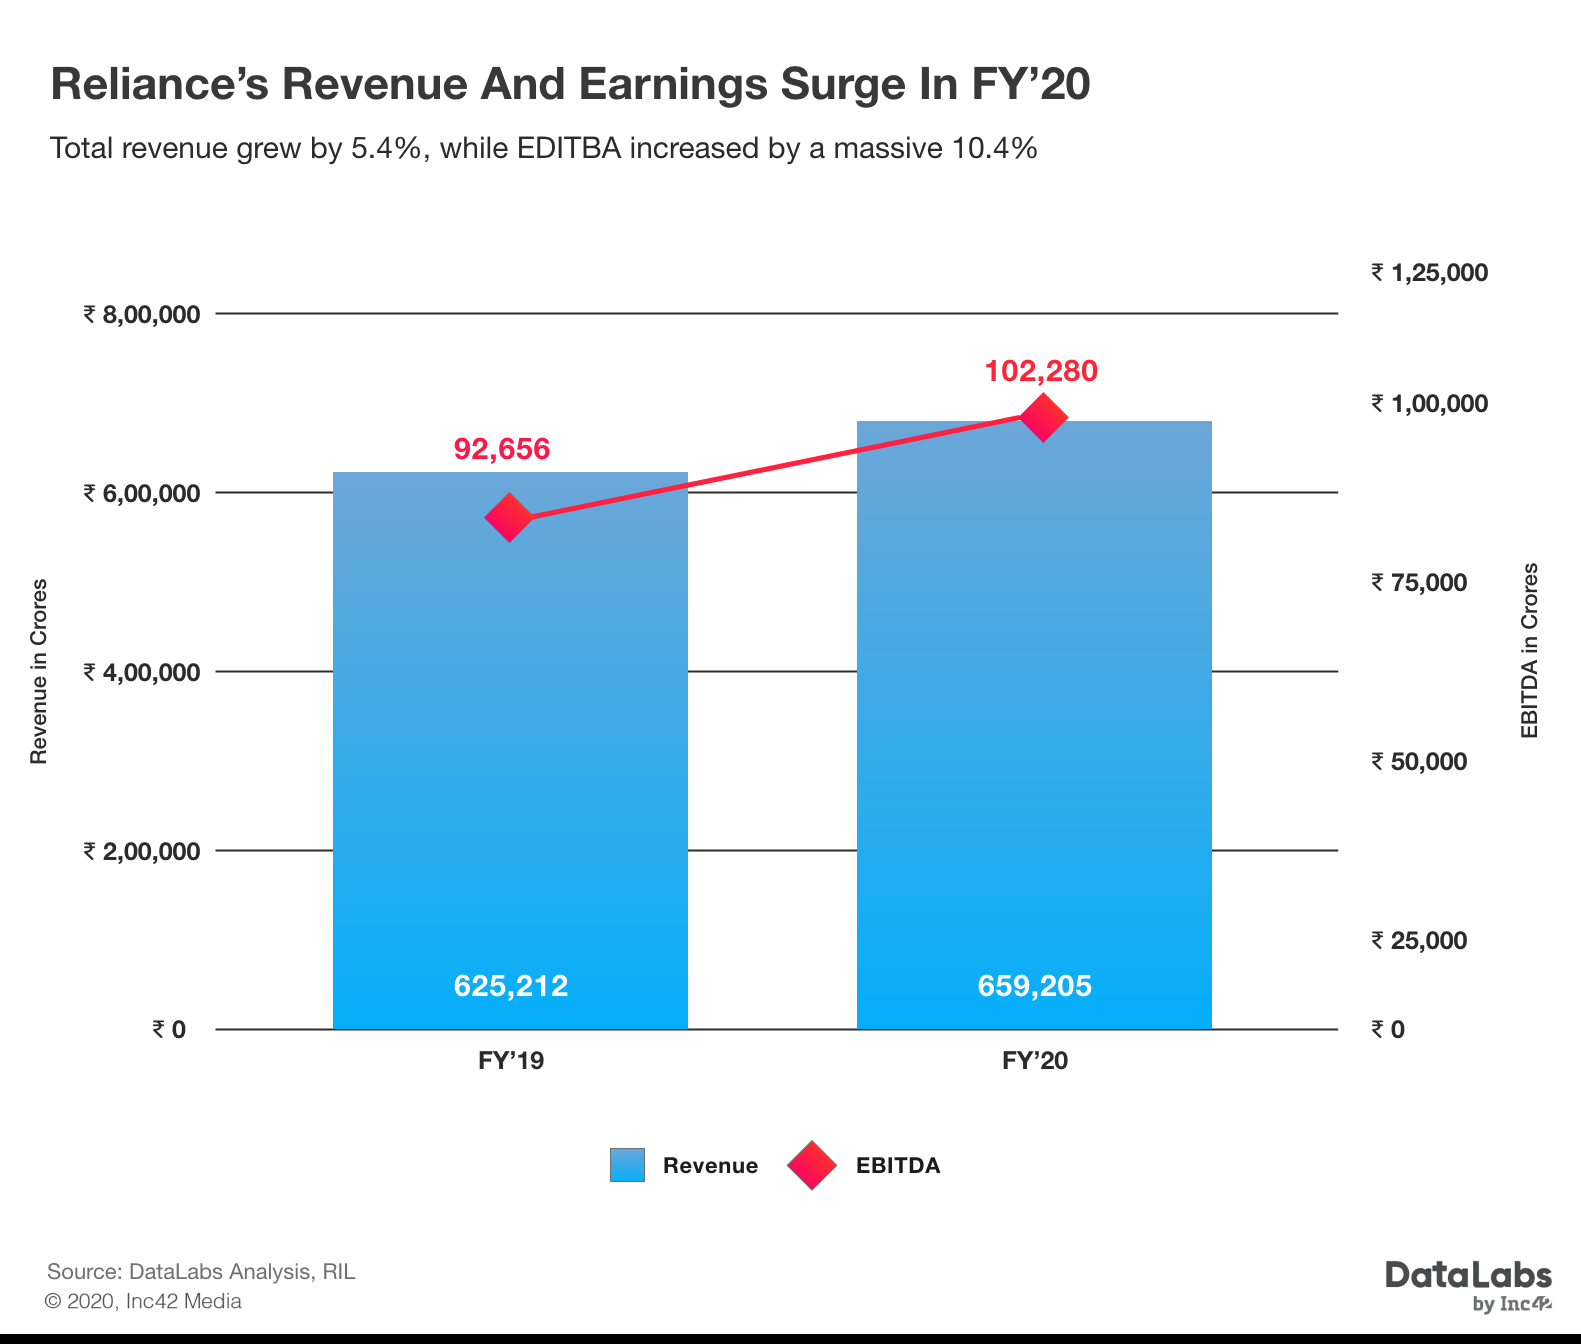 RIL revenue surge in 2020(FY'20)